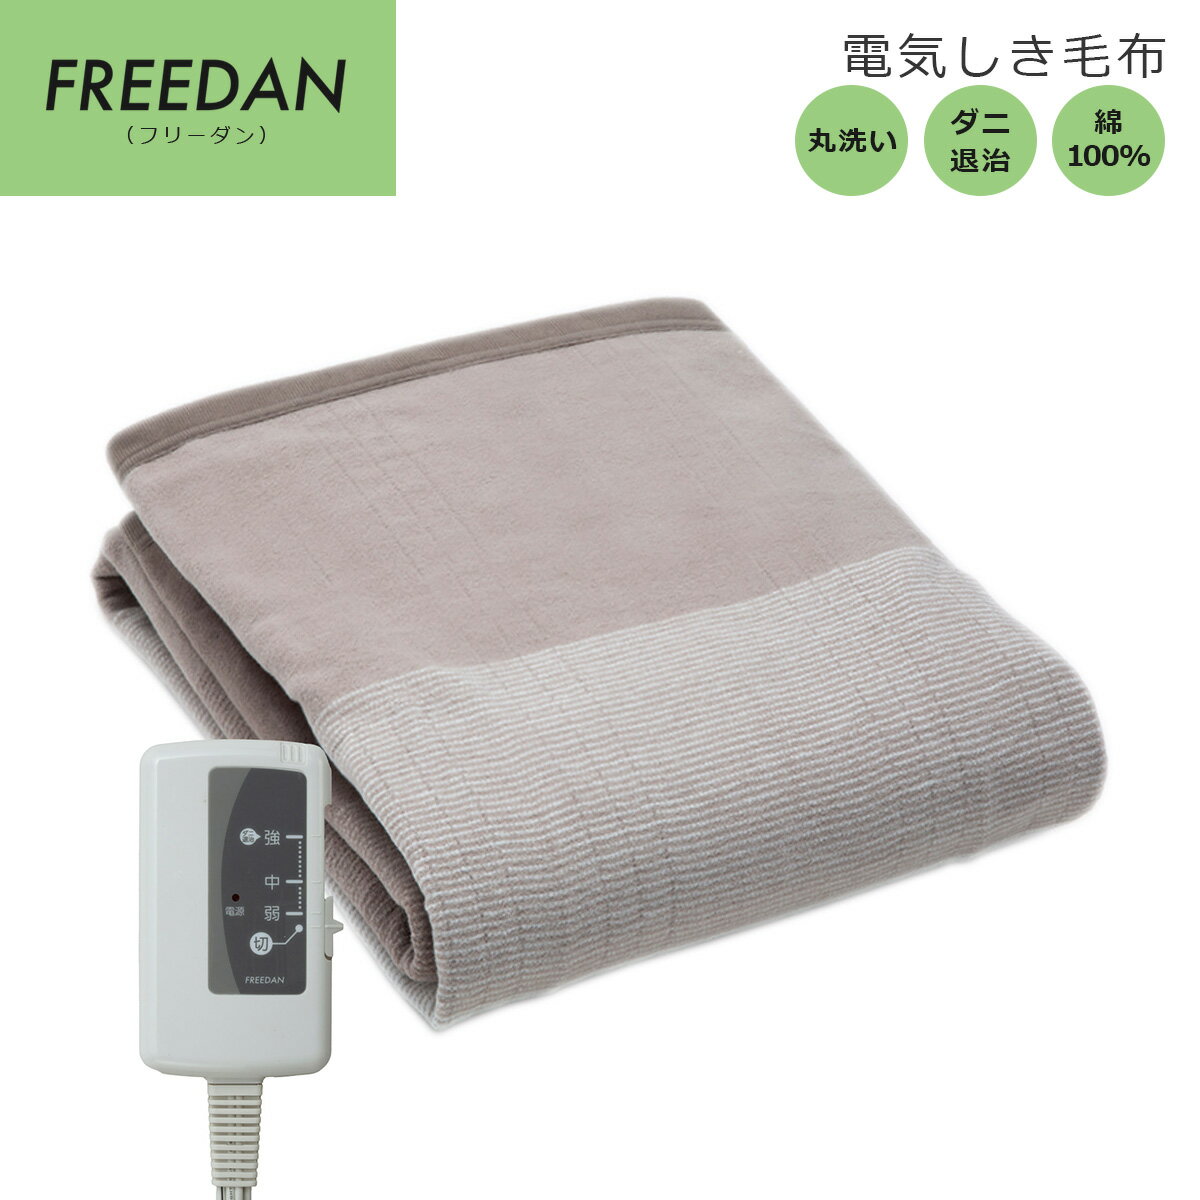 【送料無料】電気毛布 しき毛布 約1